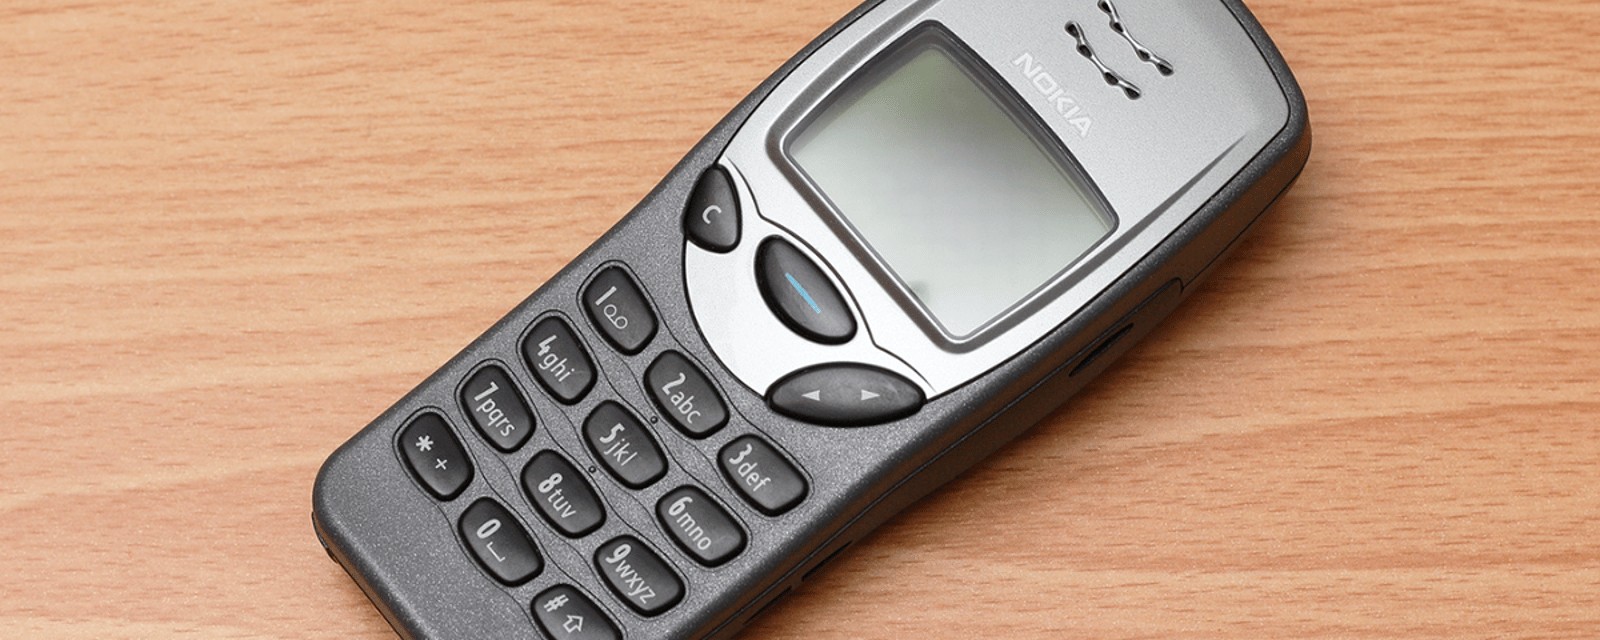 Le légendaire Nokia 3210 bientôt de retour ?